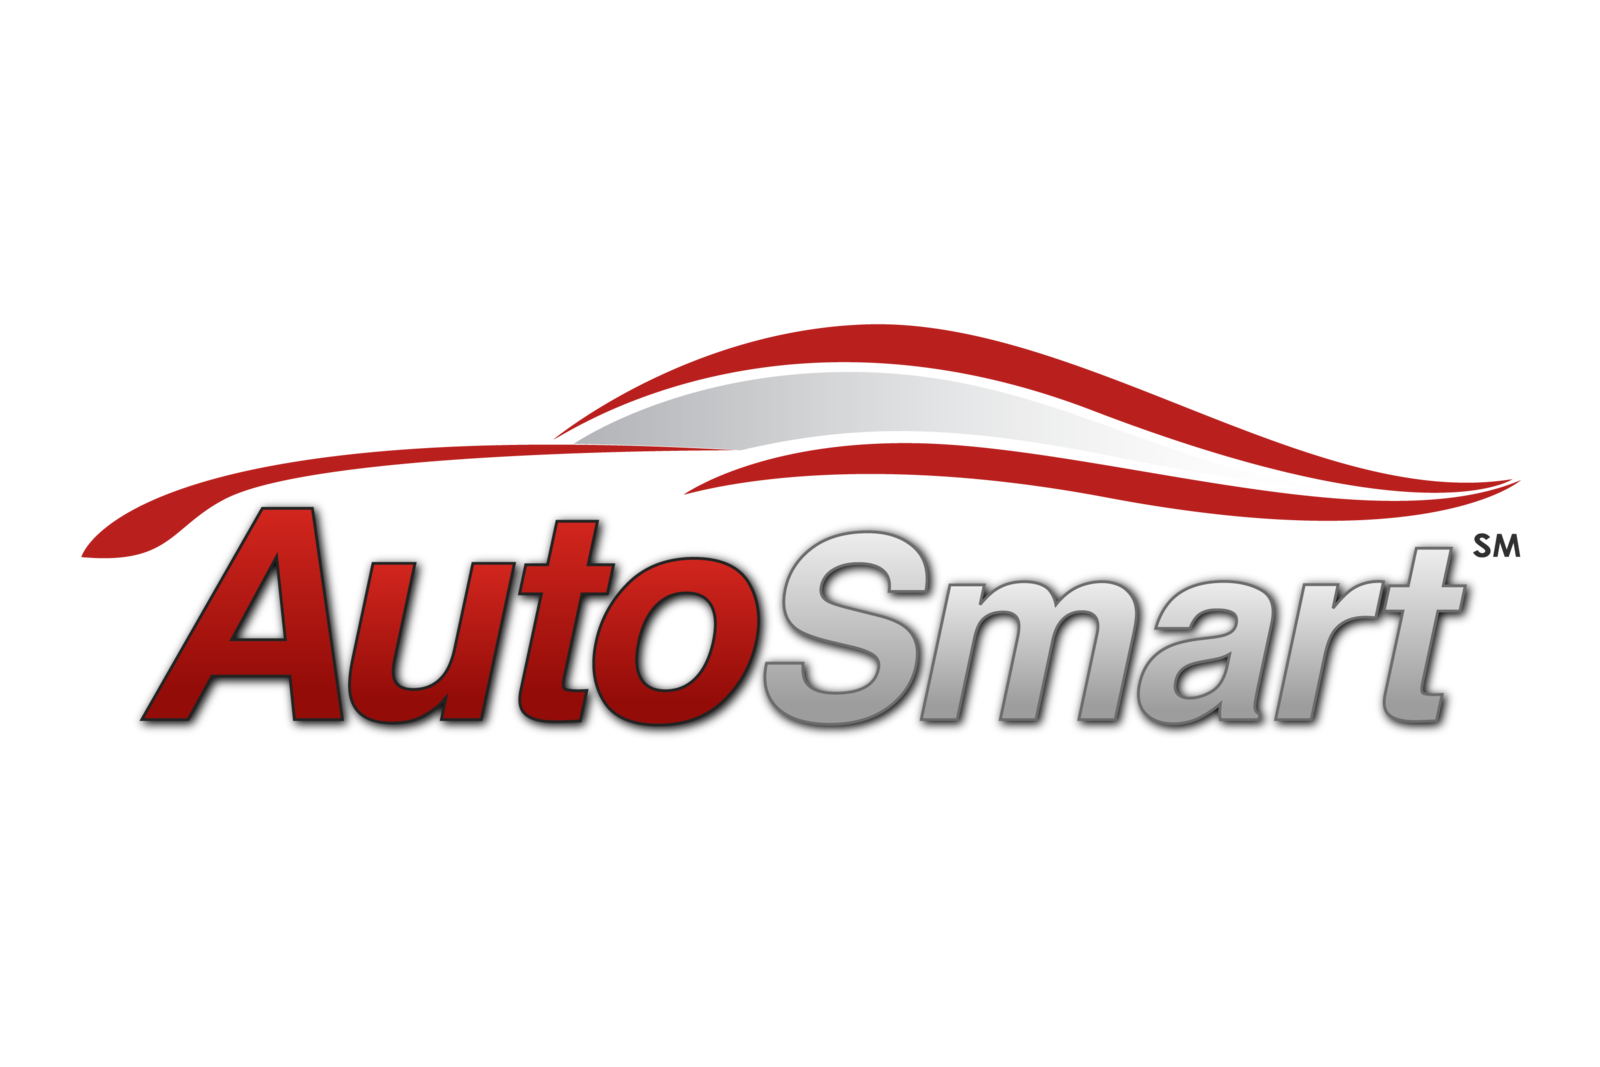 Shop Repair Car Cars Autosmart, Automobile Brands Clipart